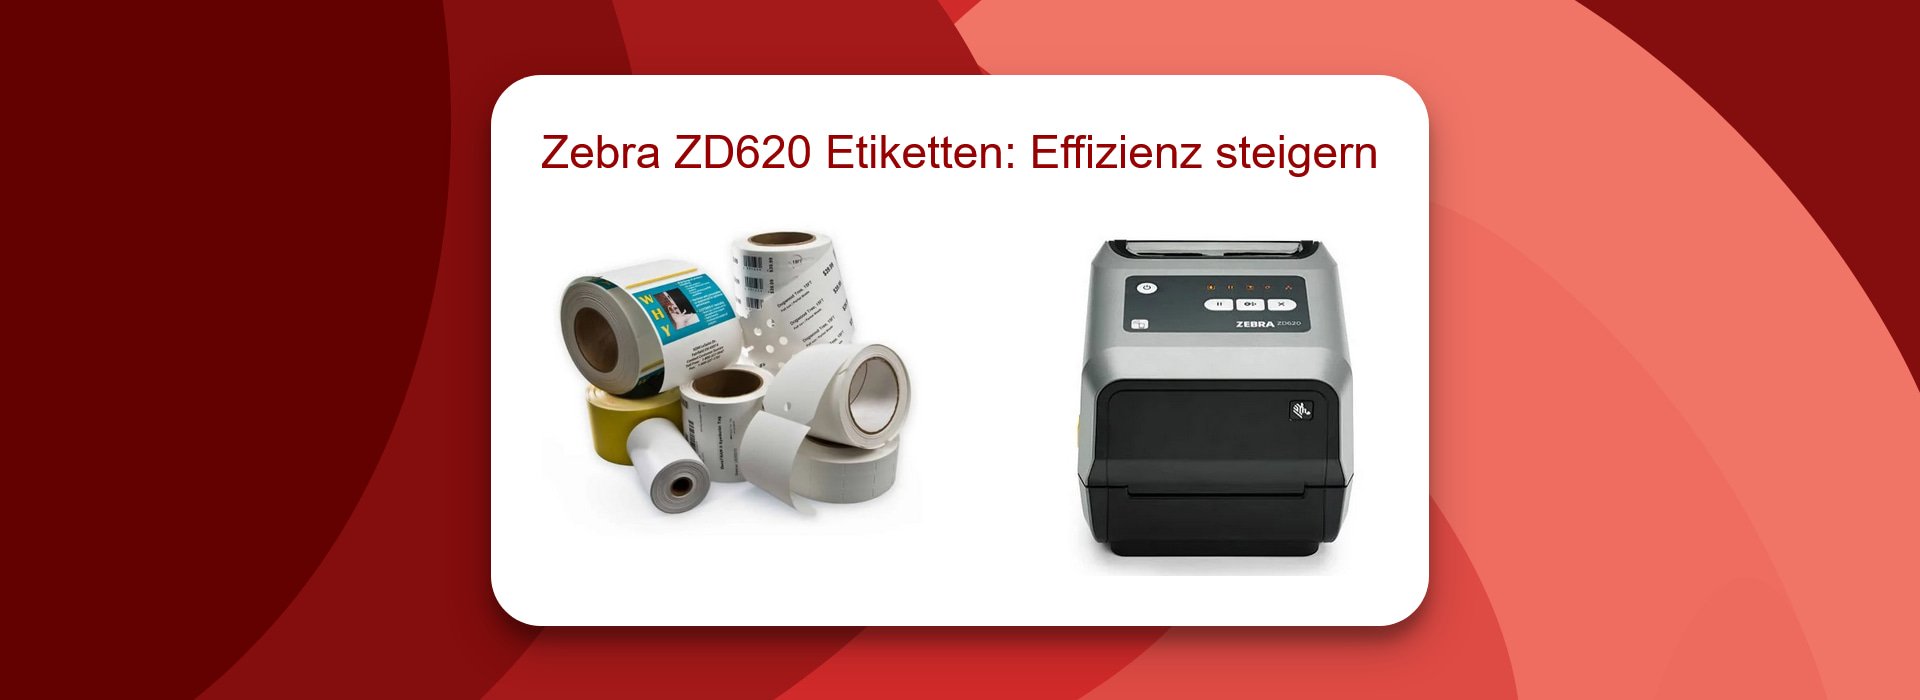 Zebra ZD620 Etiketten: Effizienz steigern